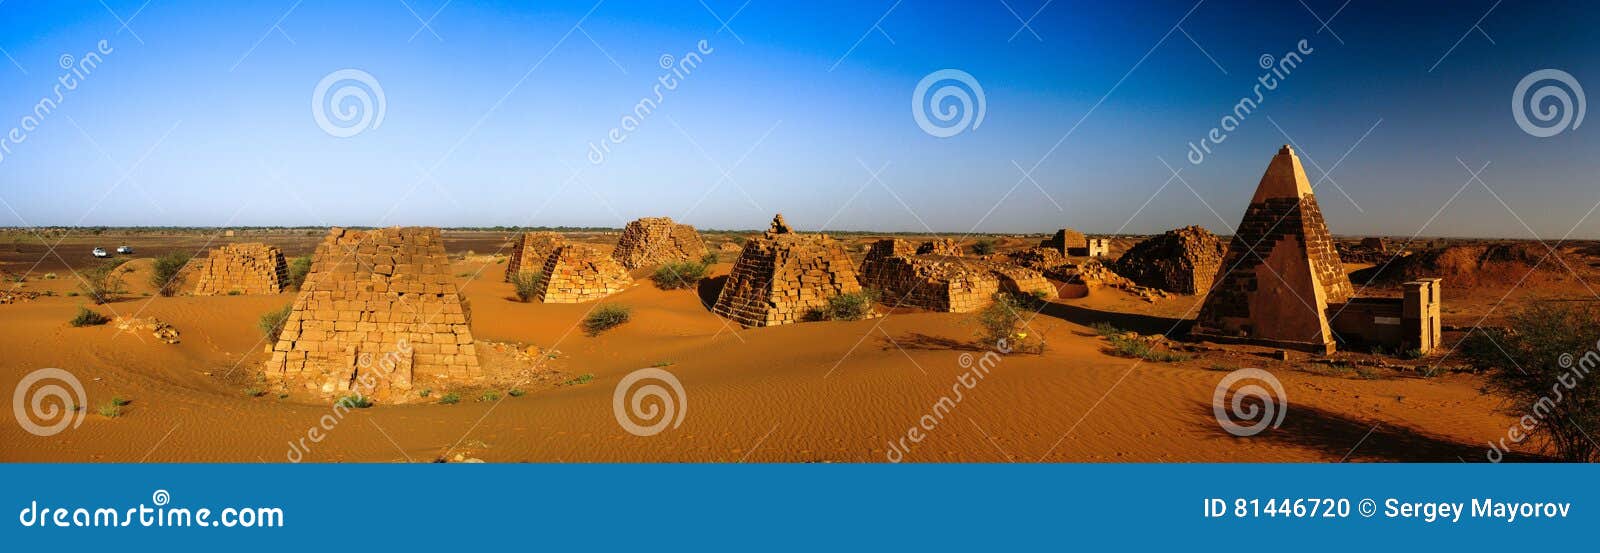 panorama of meroe pyramids in the desert sudan,